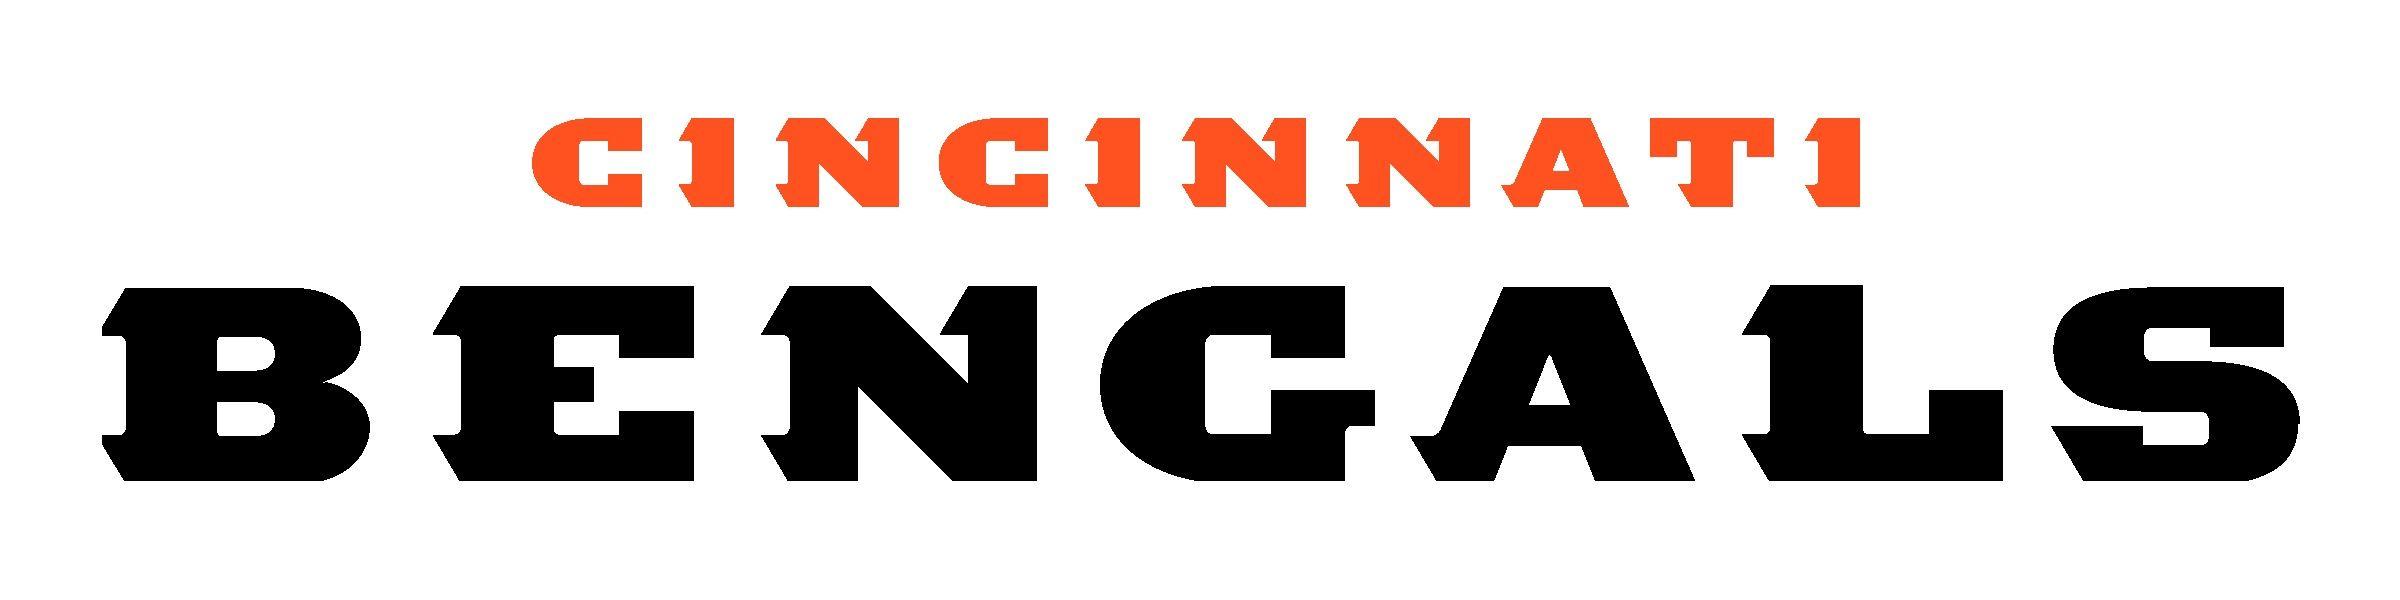 Bengals B Logo - Cincinnati Bengals Logo Font 16 - Designatprinting.com